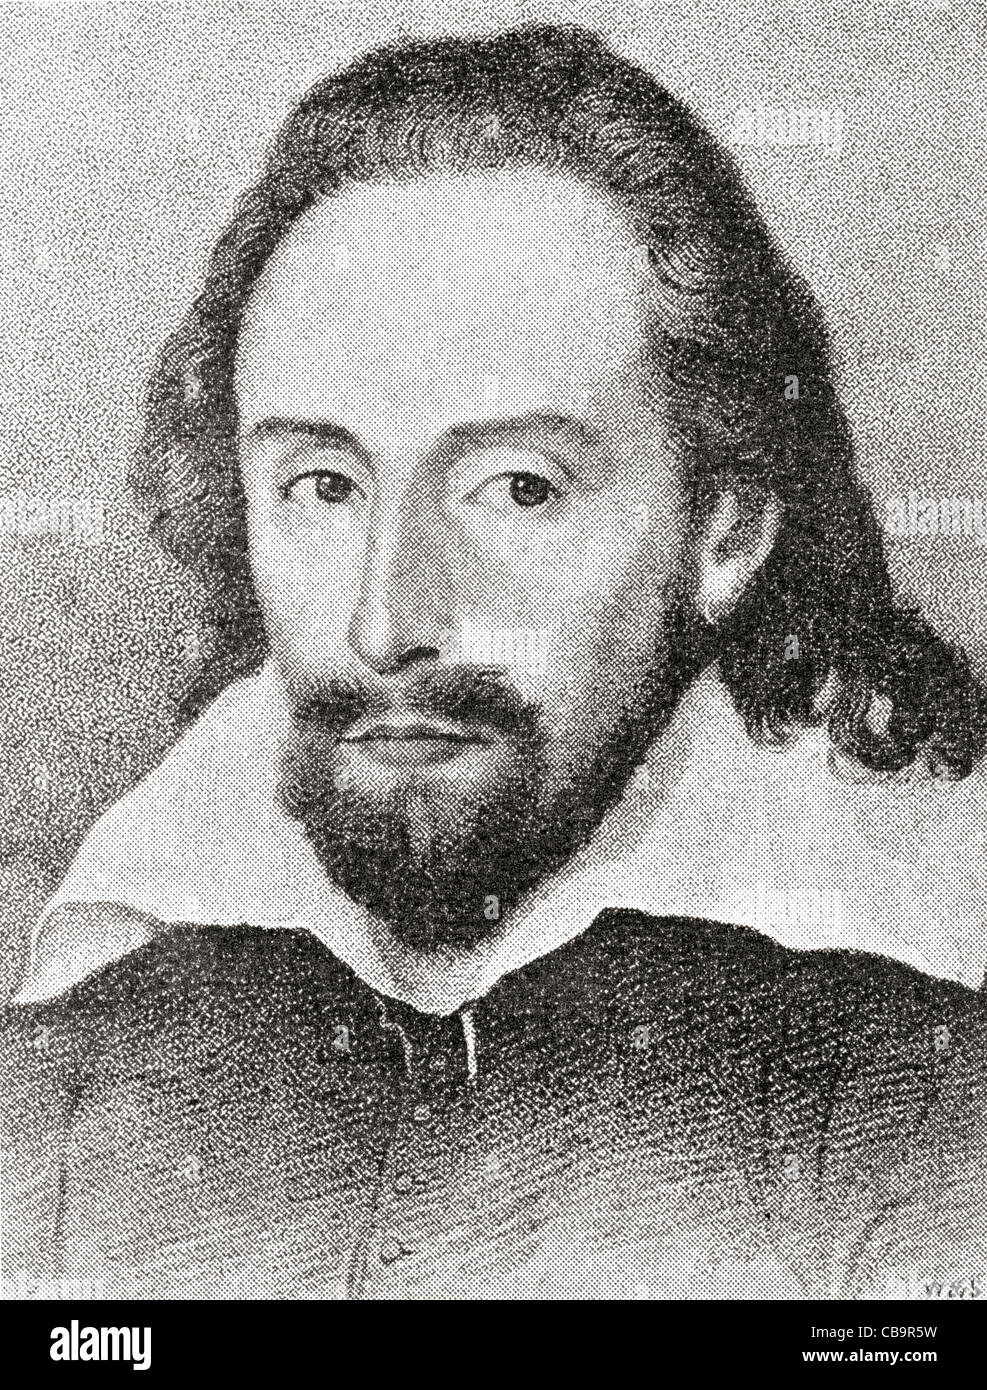 William Shakespeare, 1564 - 1616. Le poète et dramaturge anglais. Ce portrait est connue sous le nom de Dunford ressemblance. Banque D'Images